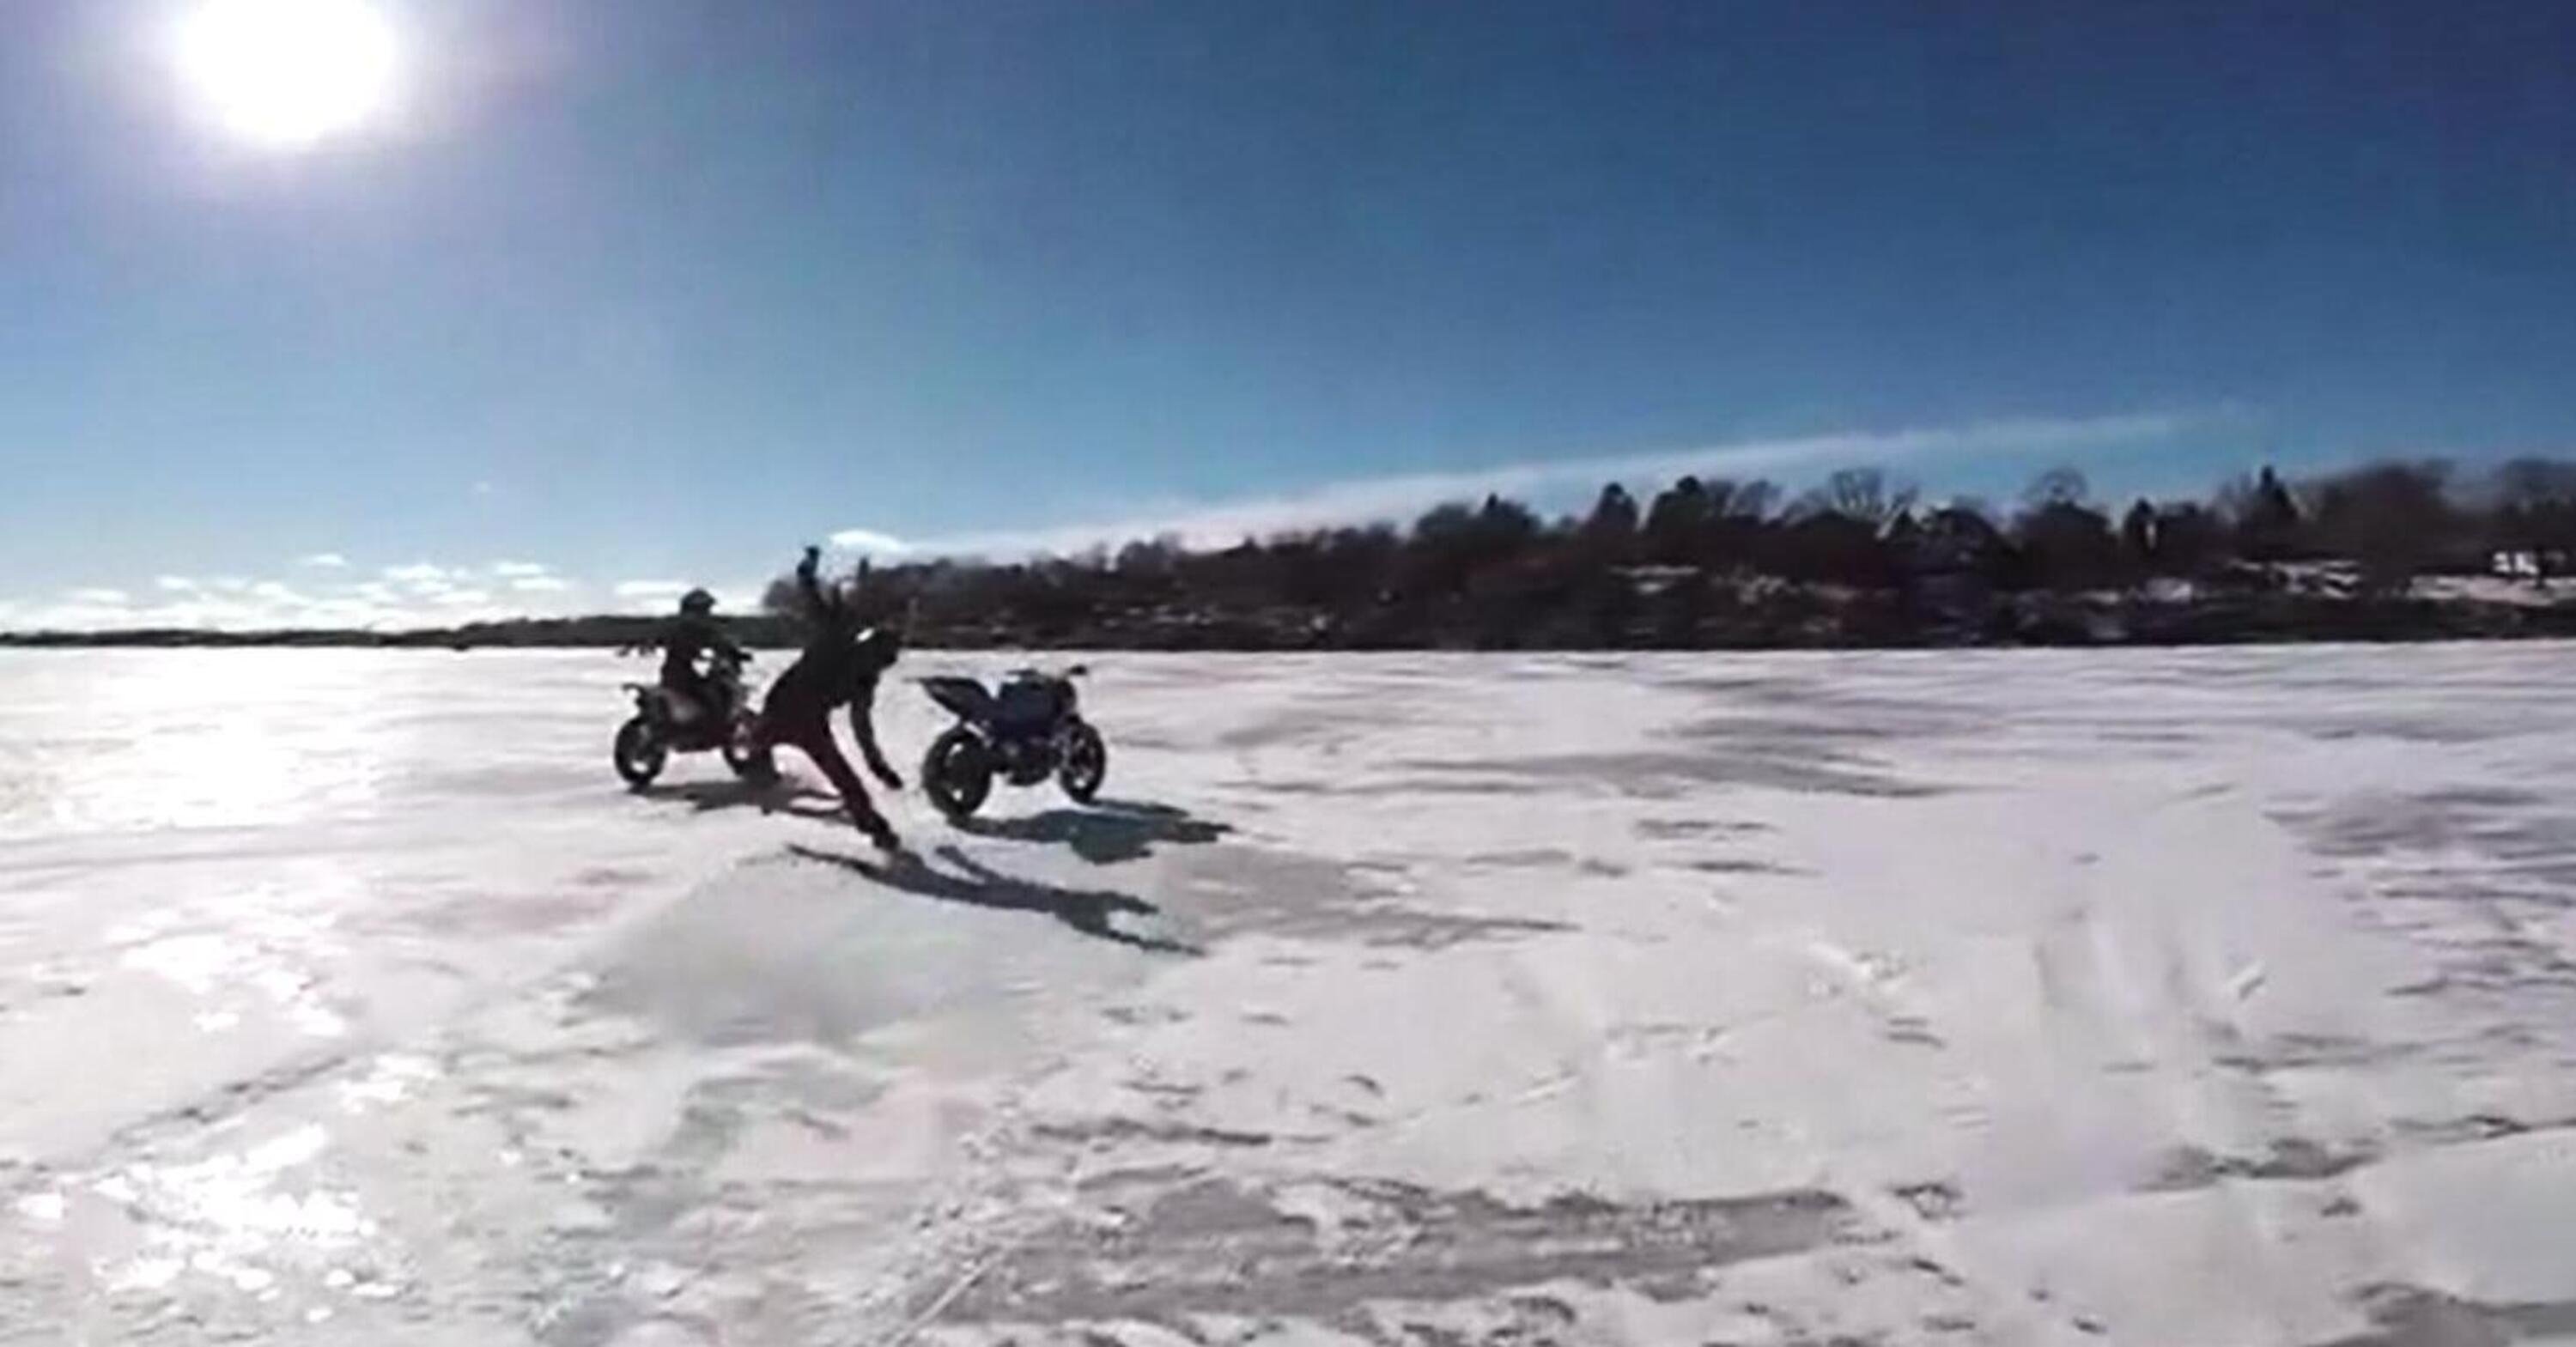 La moto se ne va sul lago ghiacciato, sembra Paperissima! [VIDEO VIRALE]